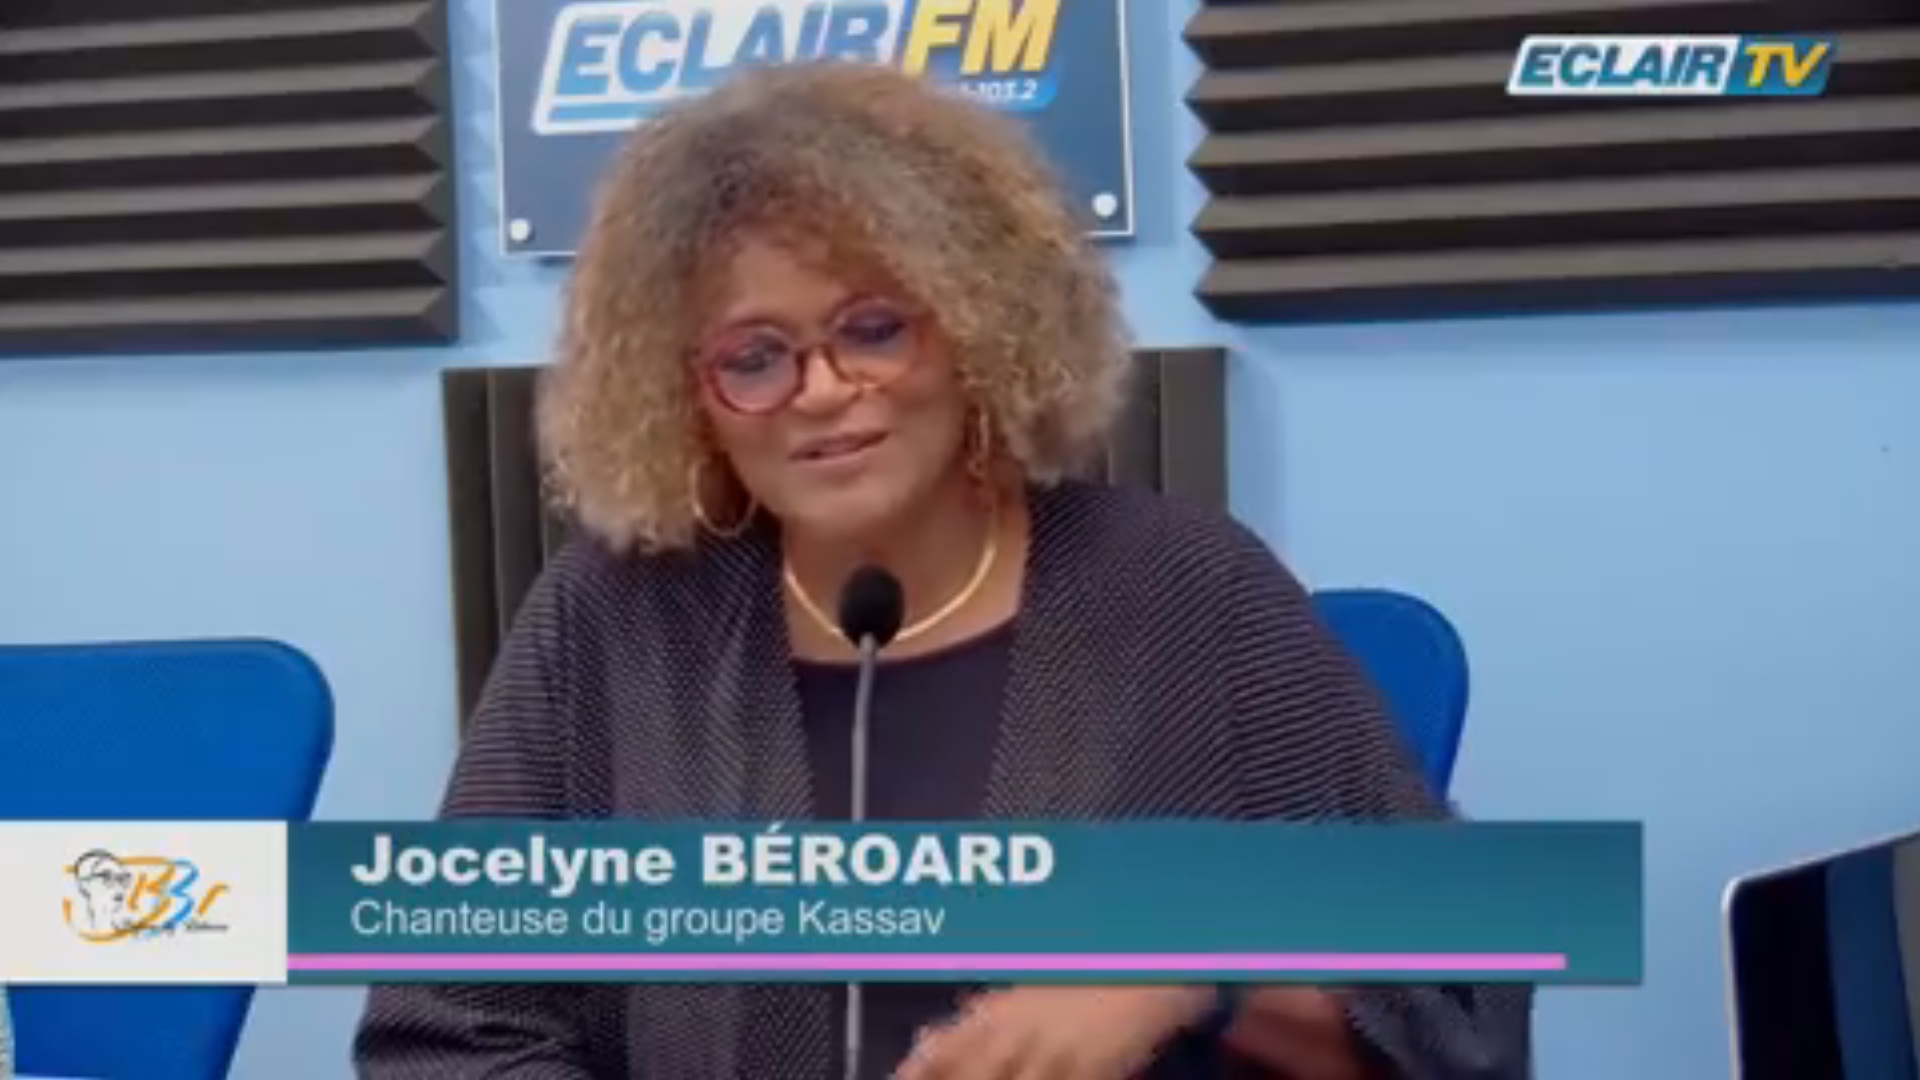 [Vidéo] Jocelyne BÉROARD invitée de Rebecca sur Eclair Tv